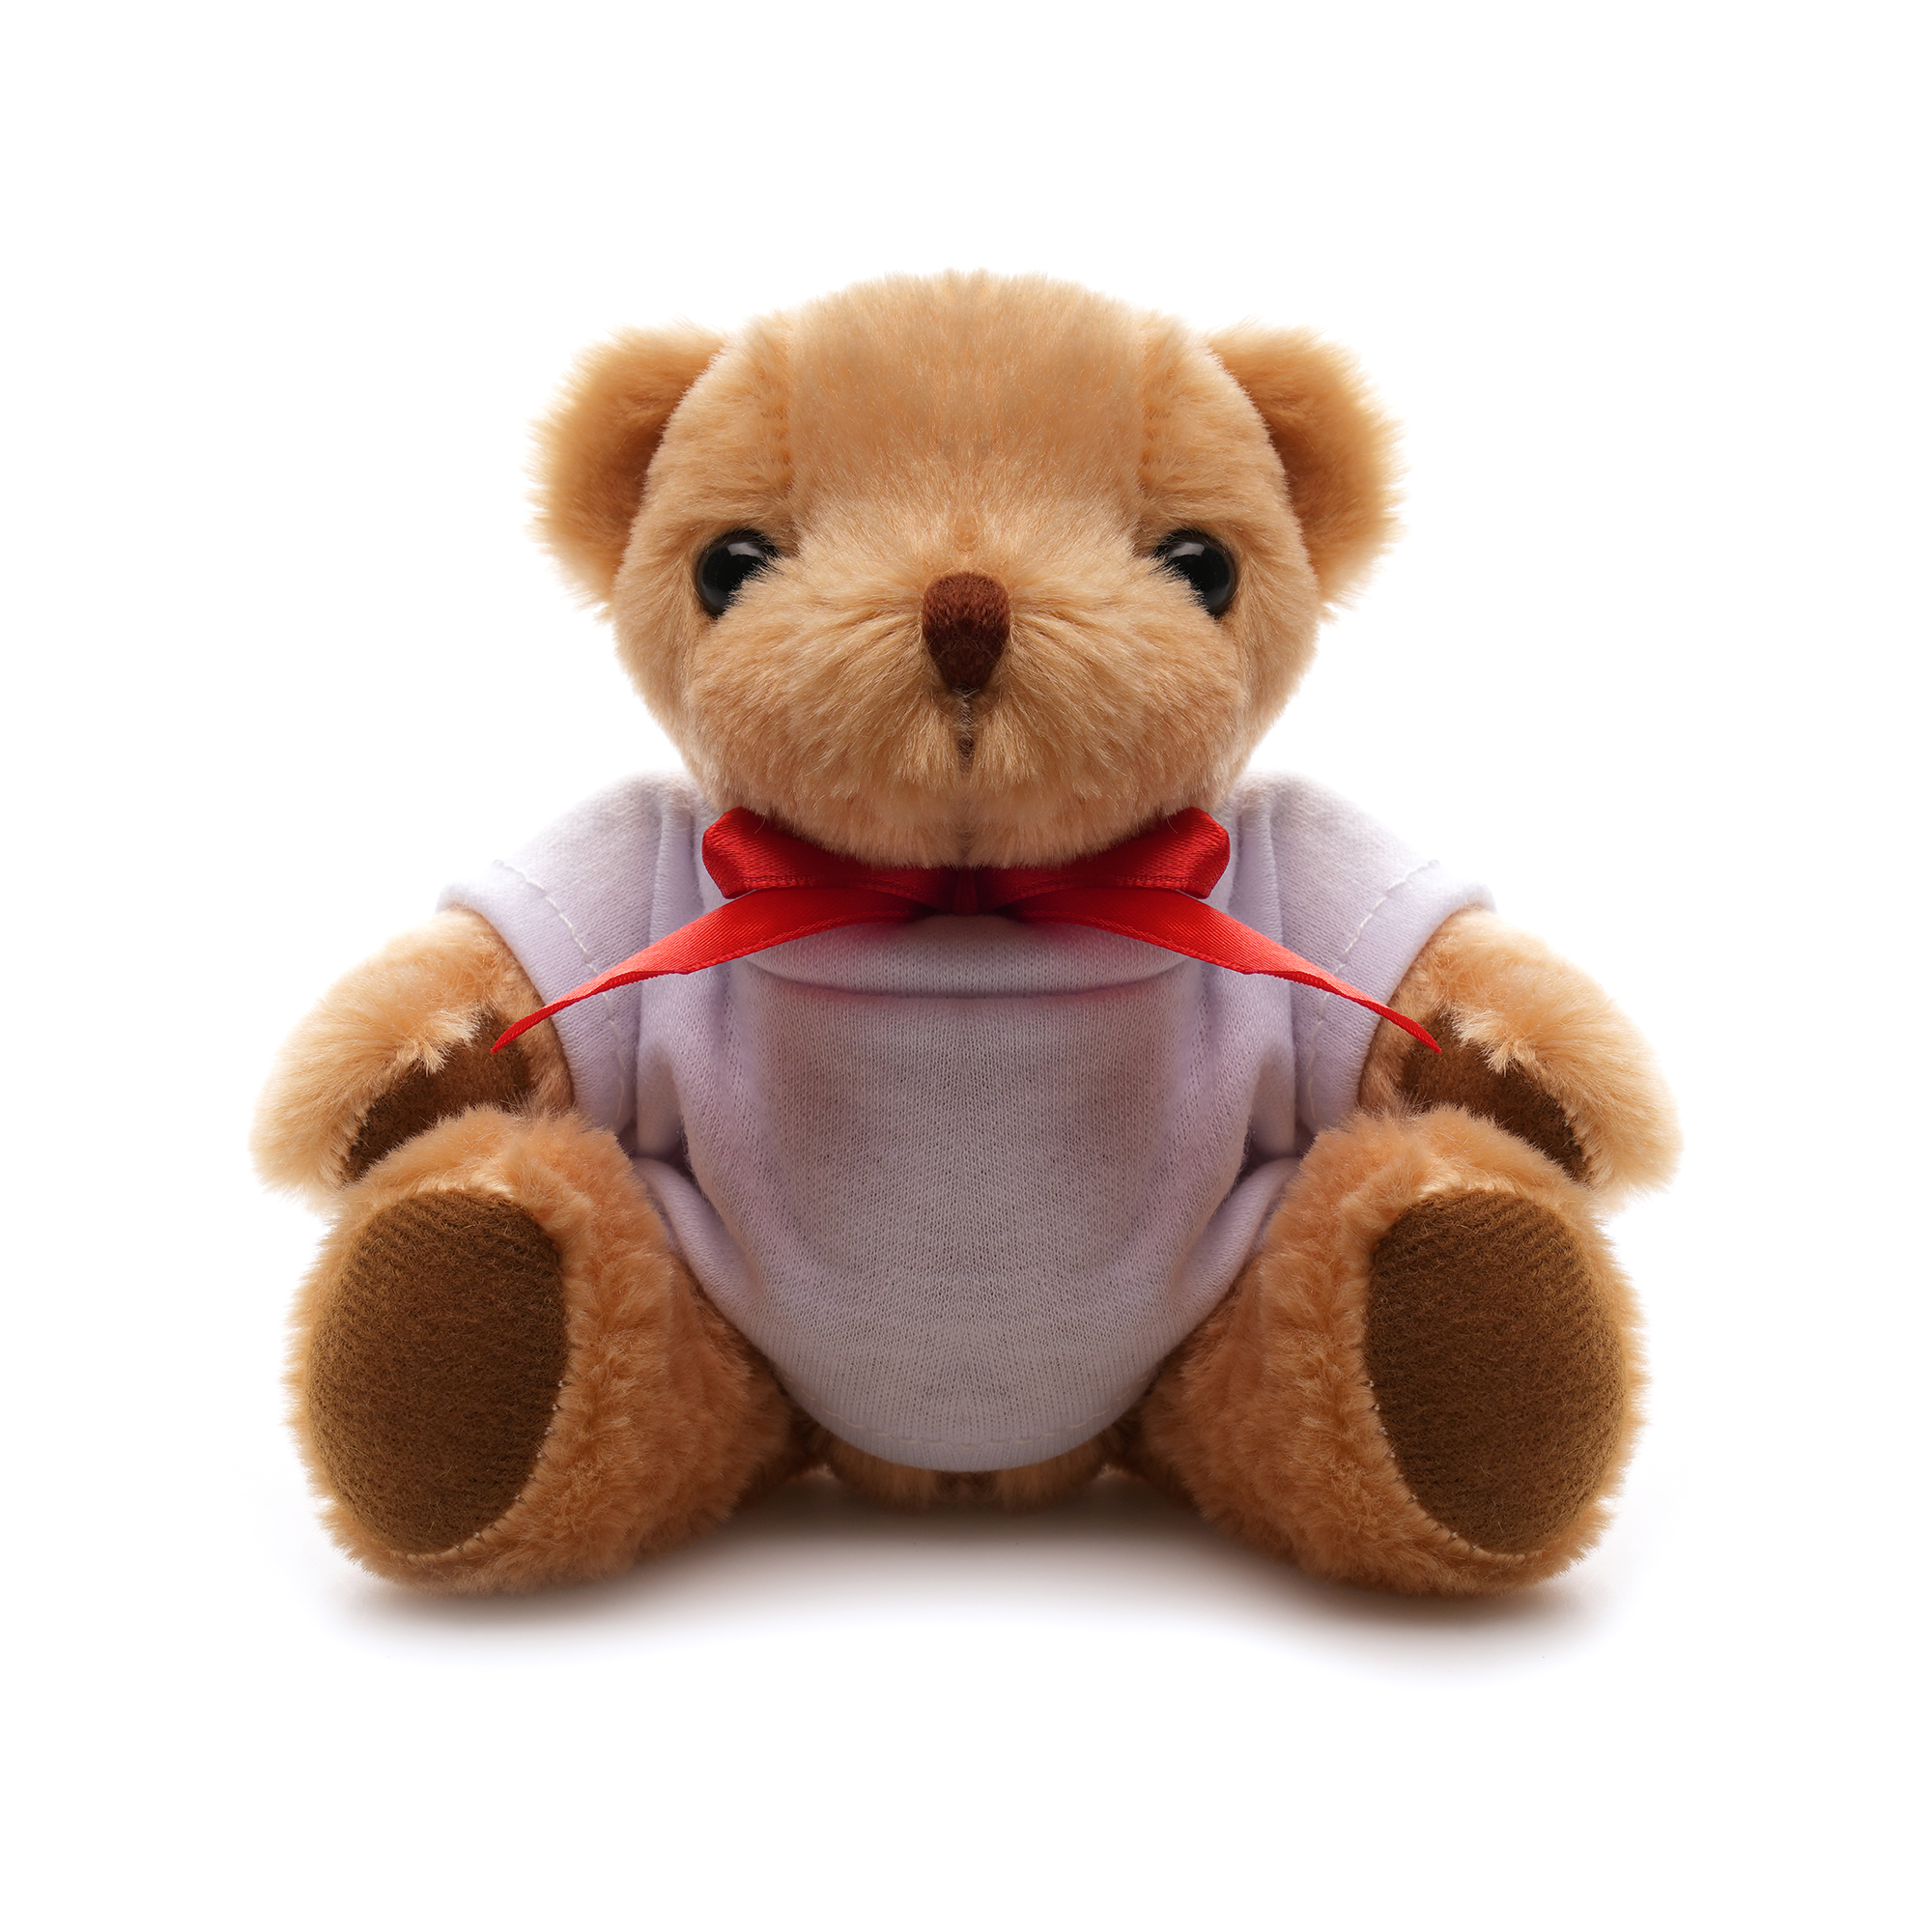 TB0005 2 - Tuffy 13cm Teddy Bear